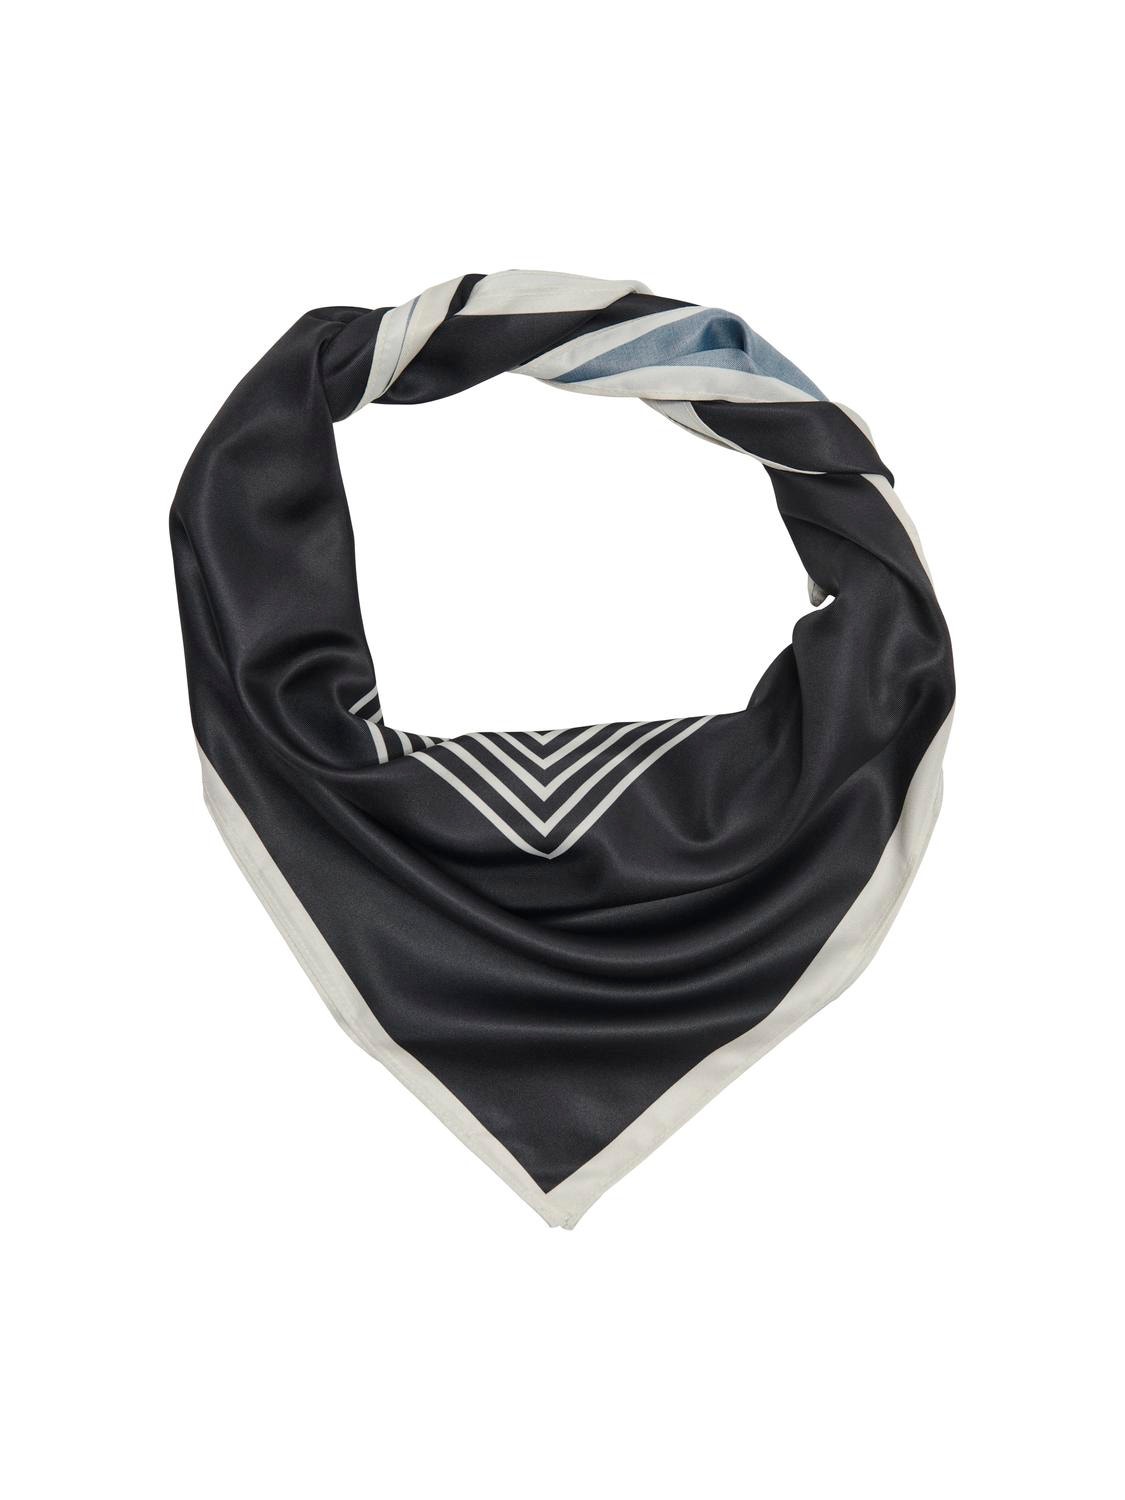 ONLY Mønstret tørklæde -Black - 15312137